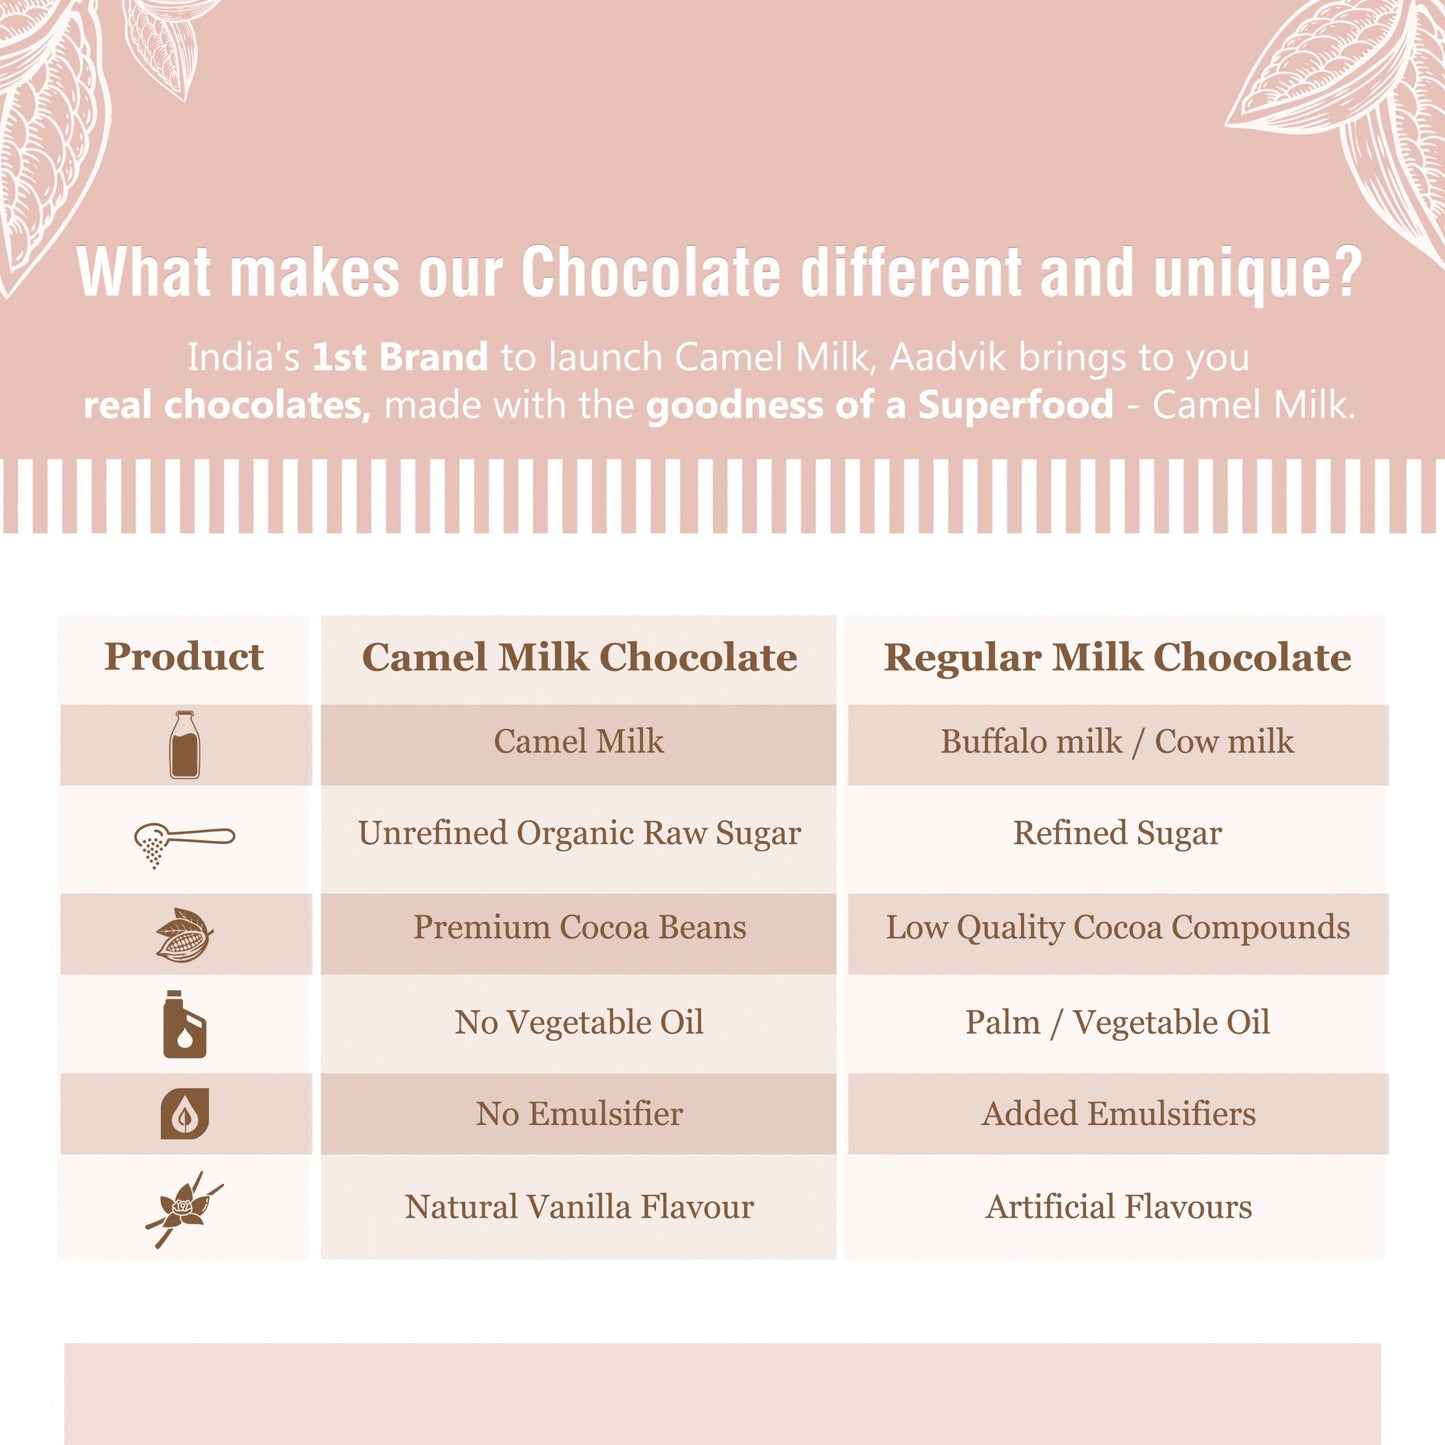 Camel Milk Chocolate | Classic । 100% Natural Ingredients । Premium Quality